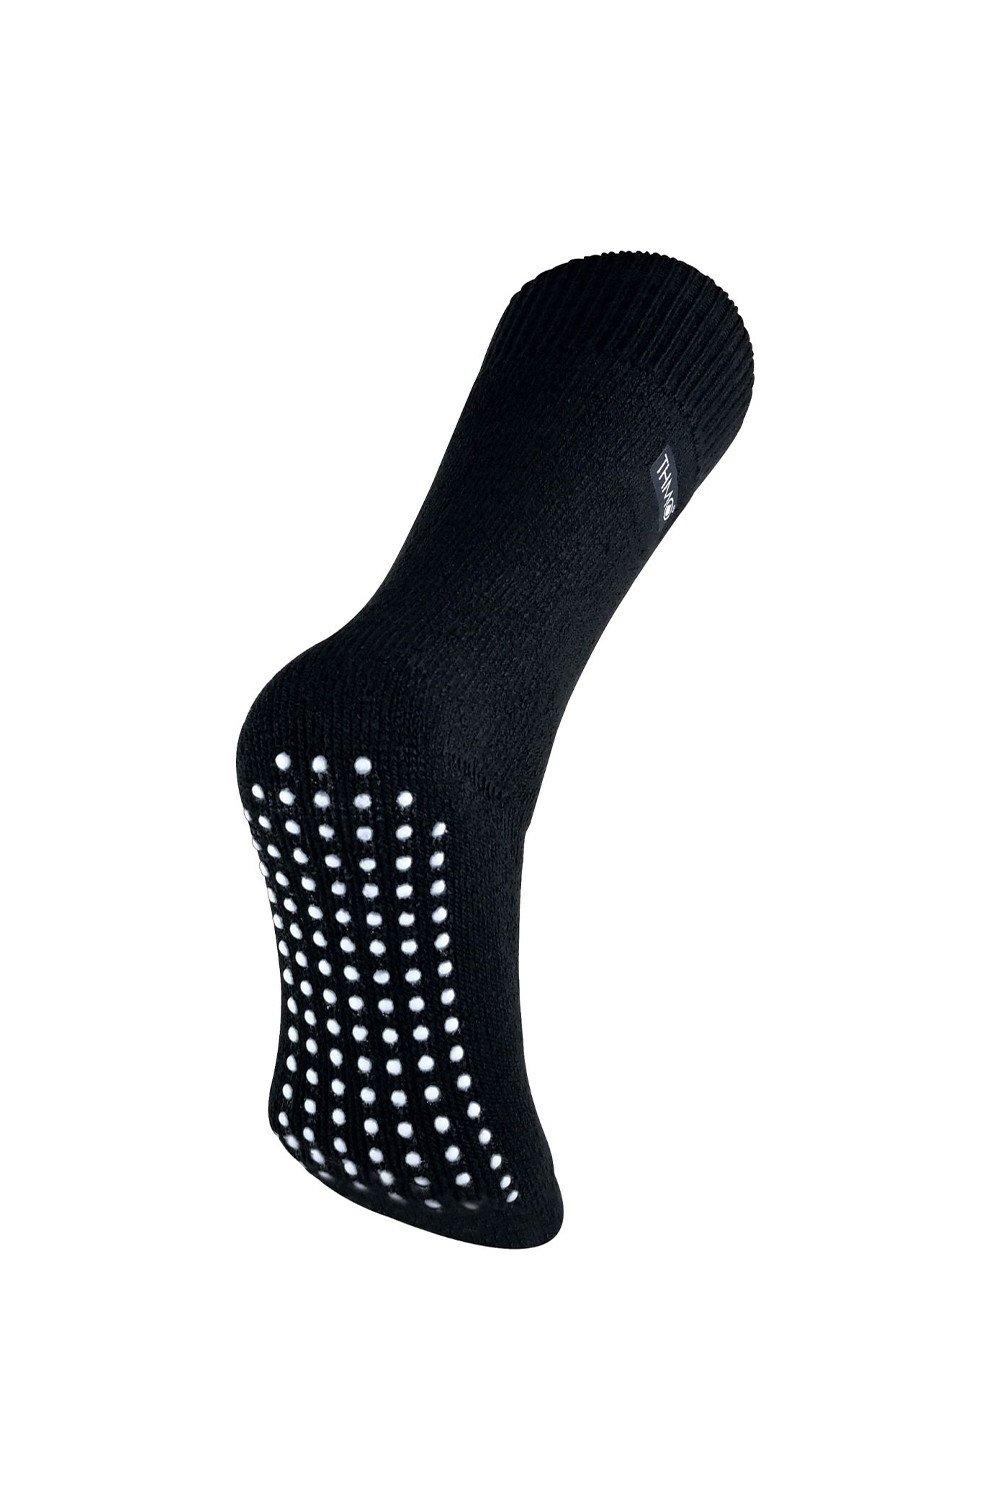 Thermal Fleece Lined Slipper Socks with Non Slip Grips